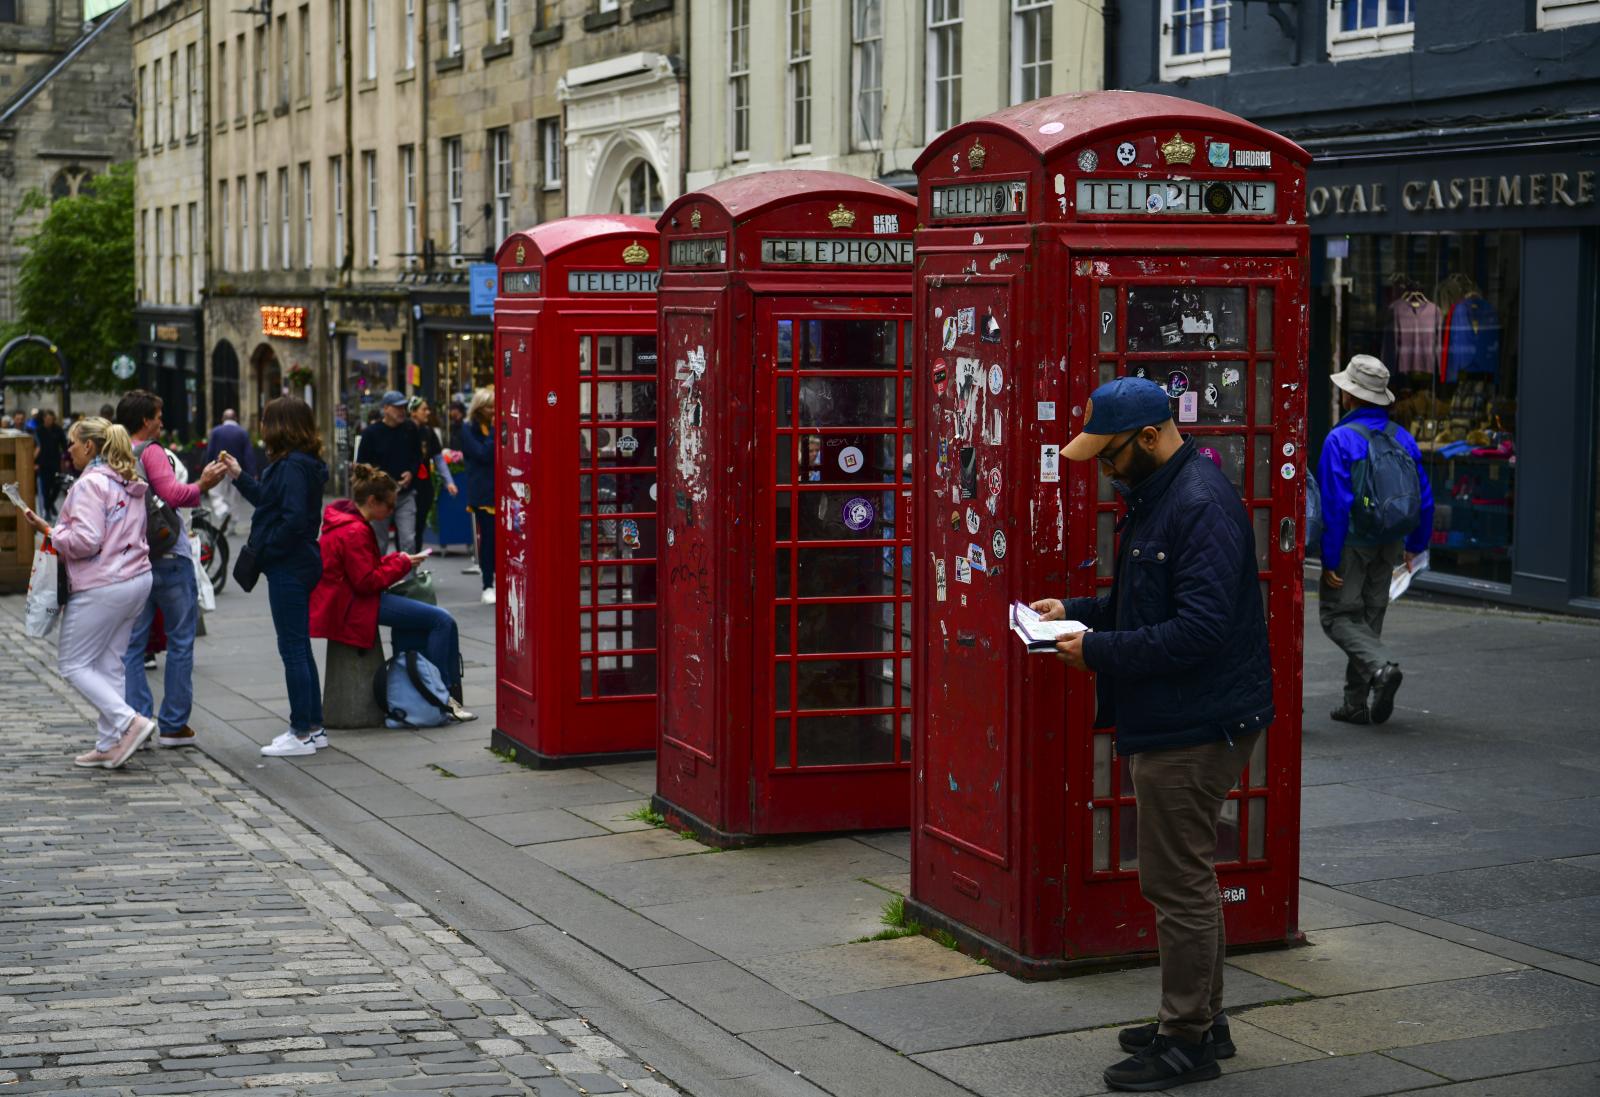 Image from Daily Life UK - Edinburgh